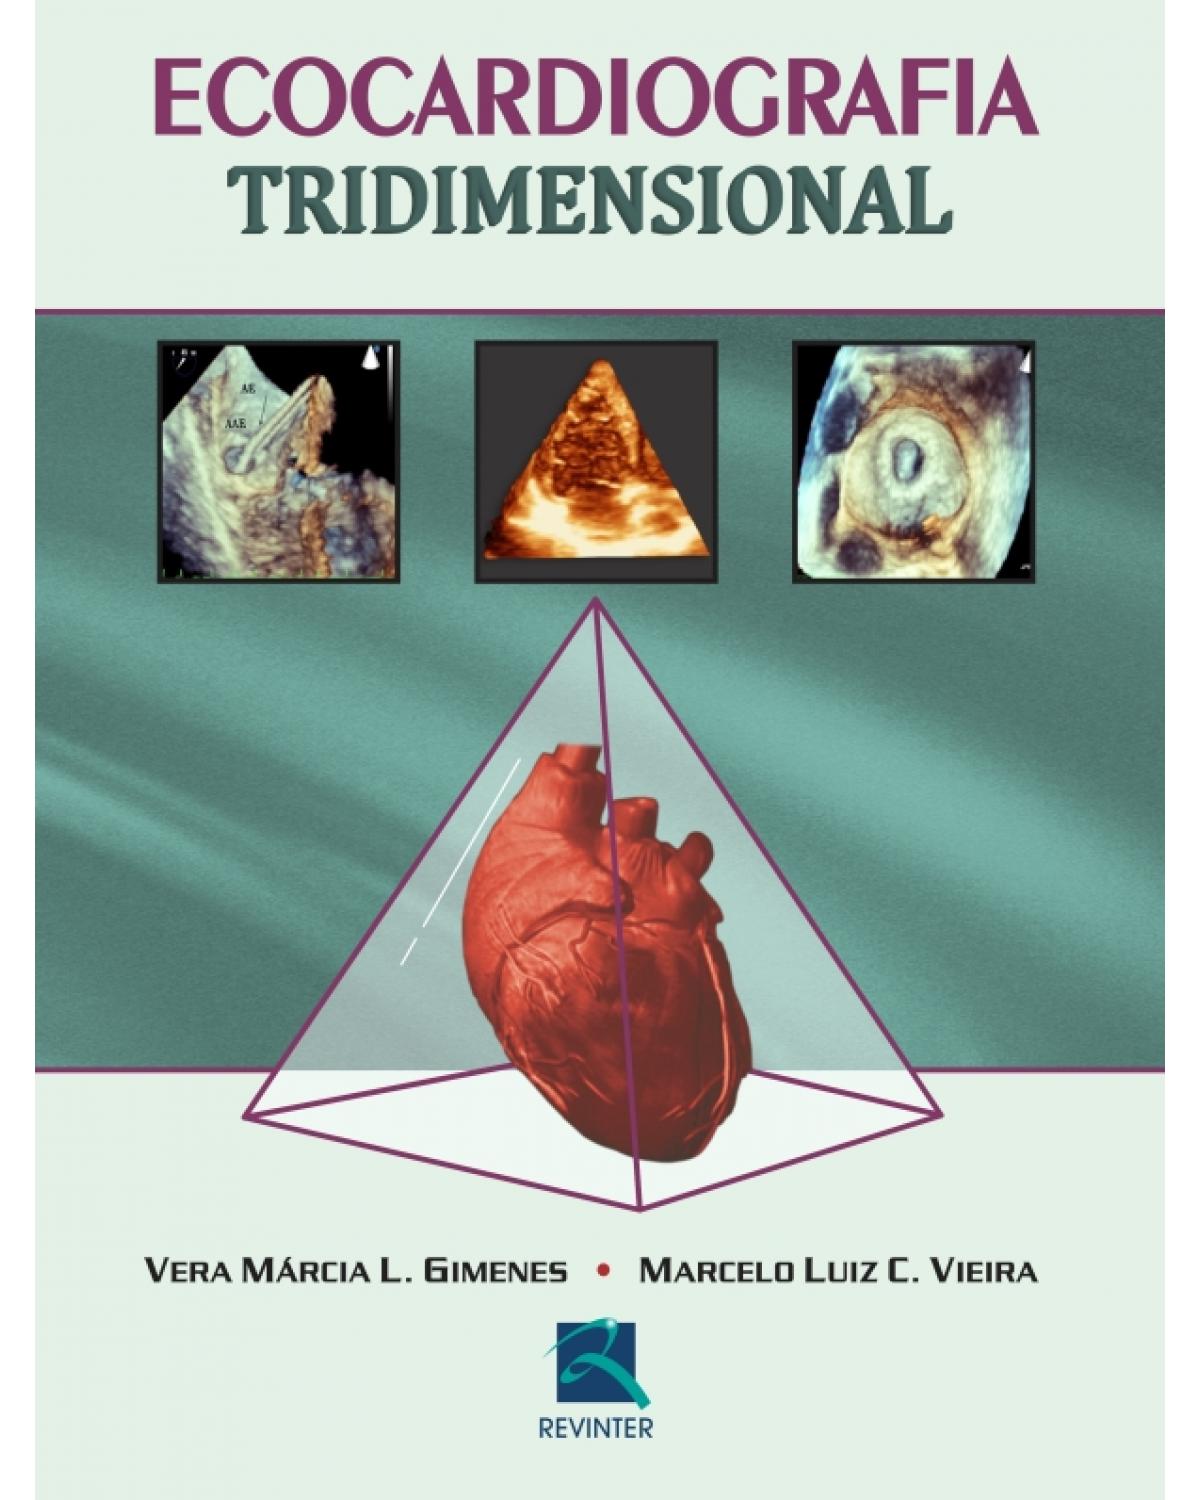 Ecocardiografia tridimensional - 1ª Edição | 2011